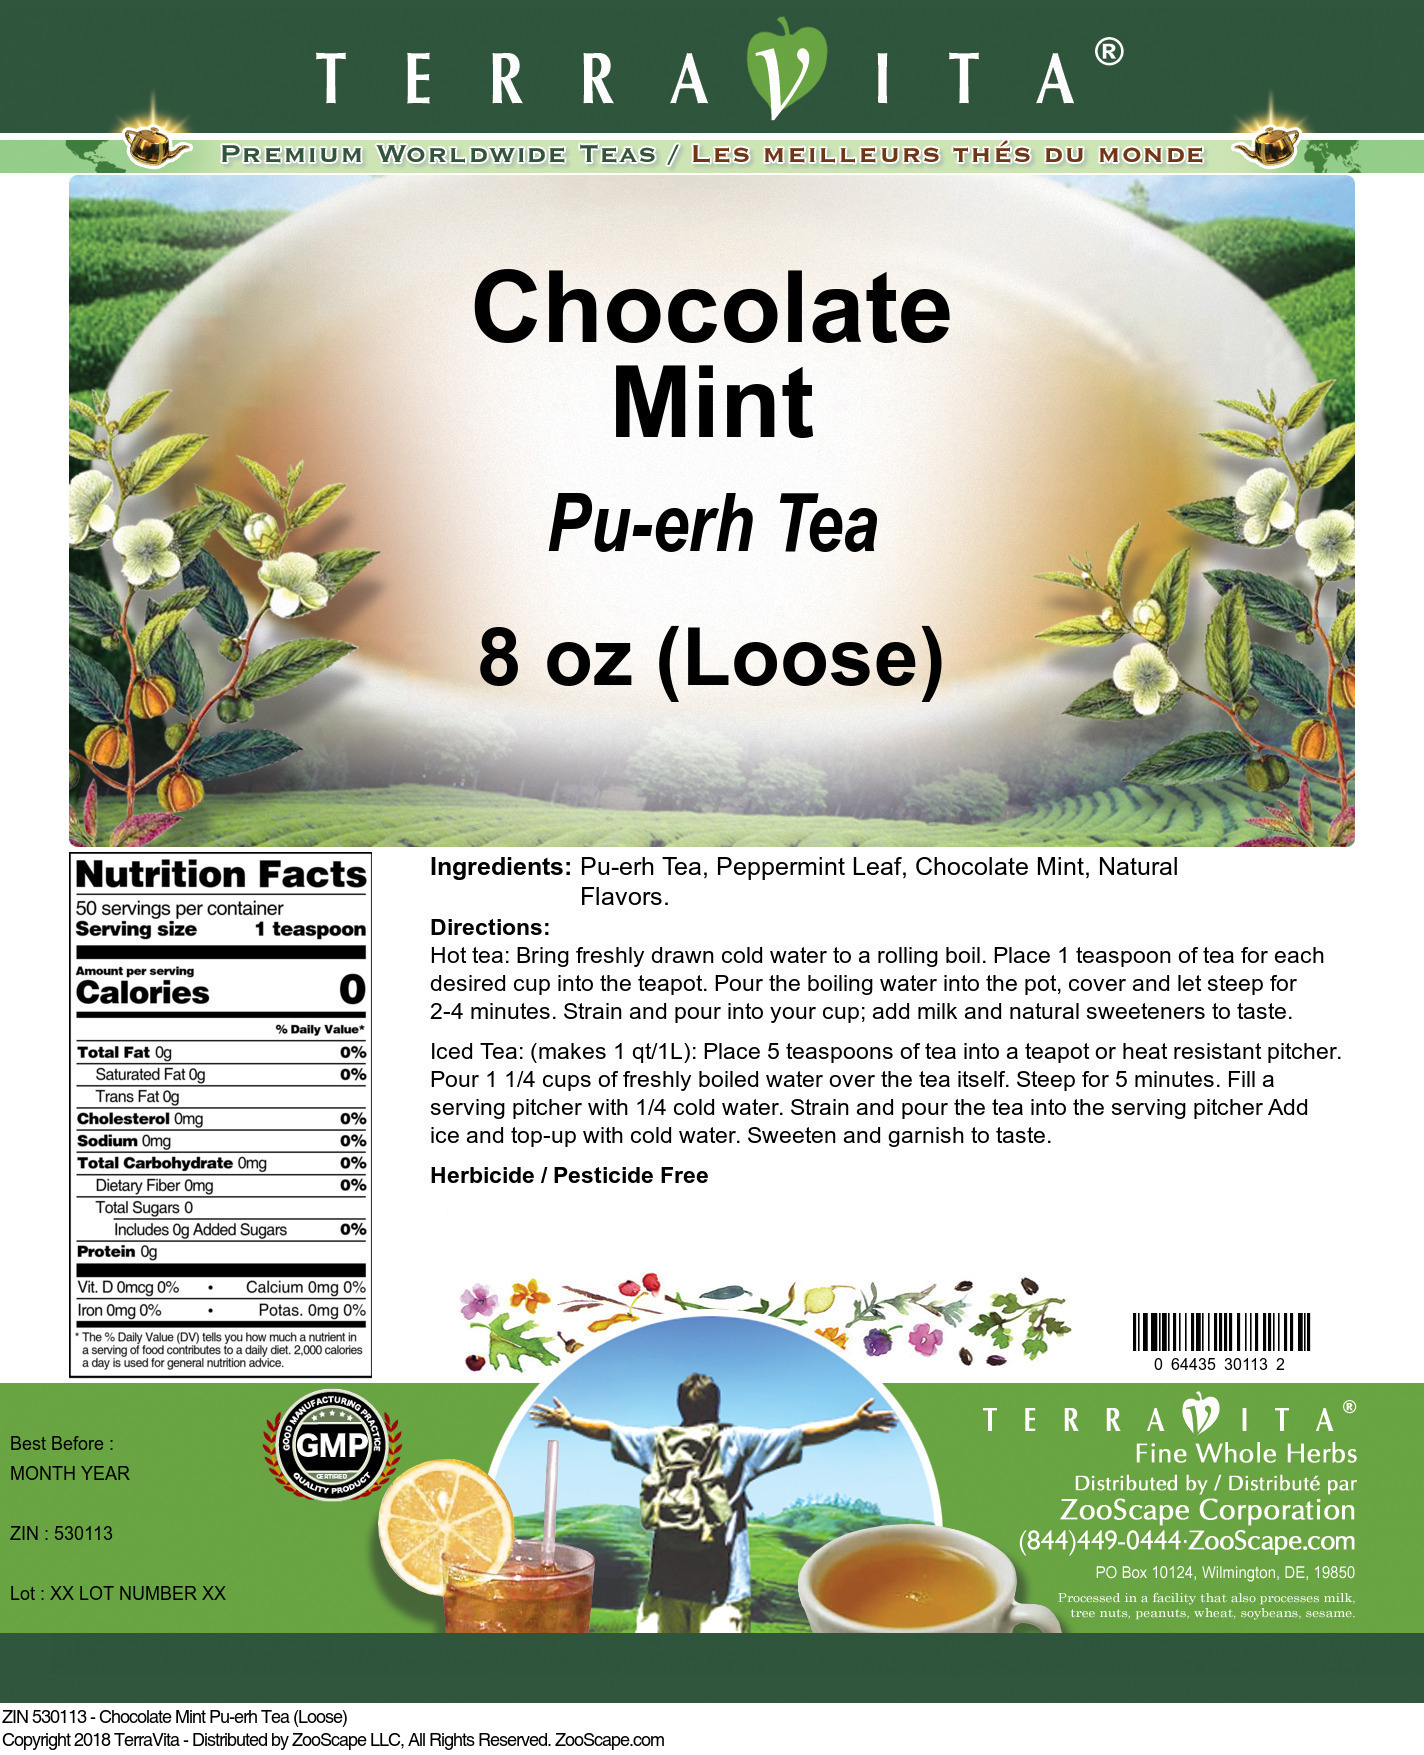 Chocolate Mint Pu-erh Tea (Loose) - Label